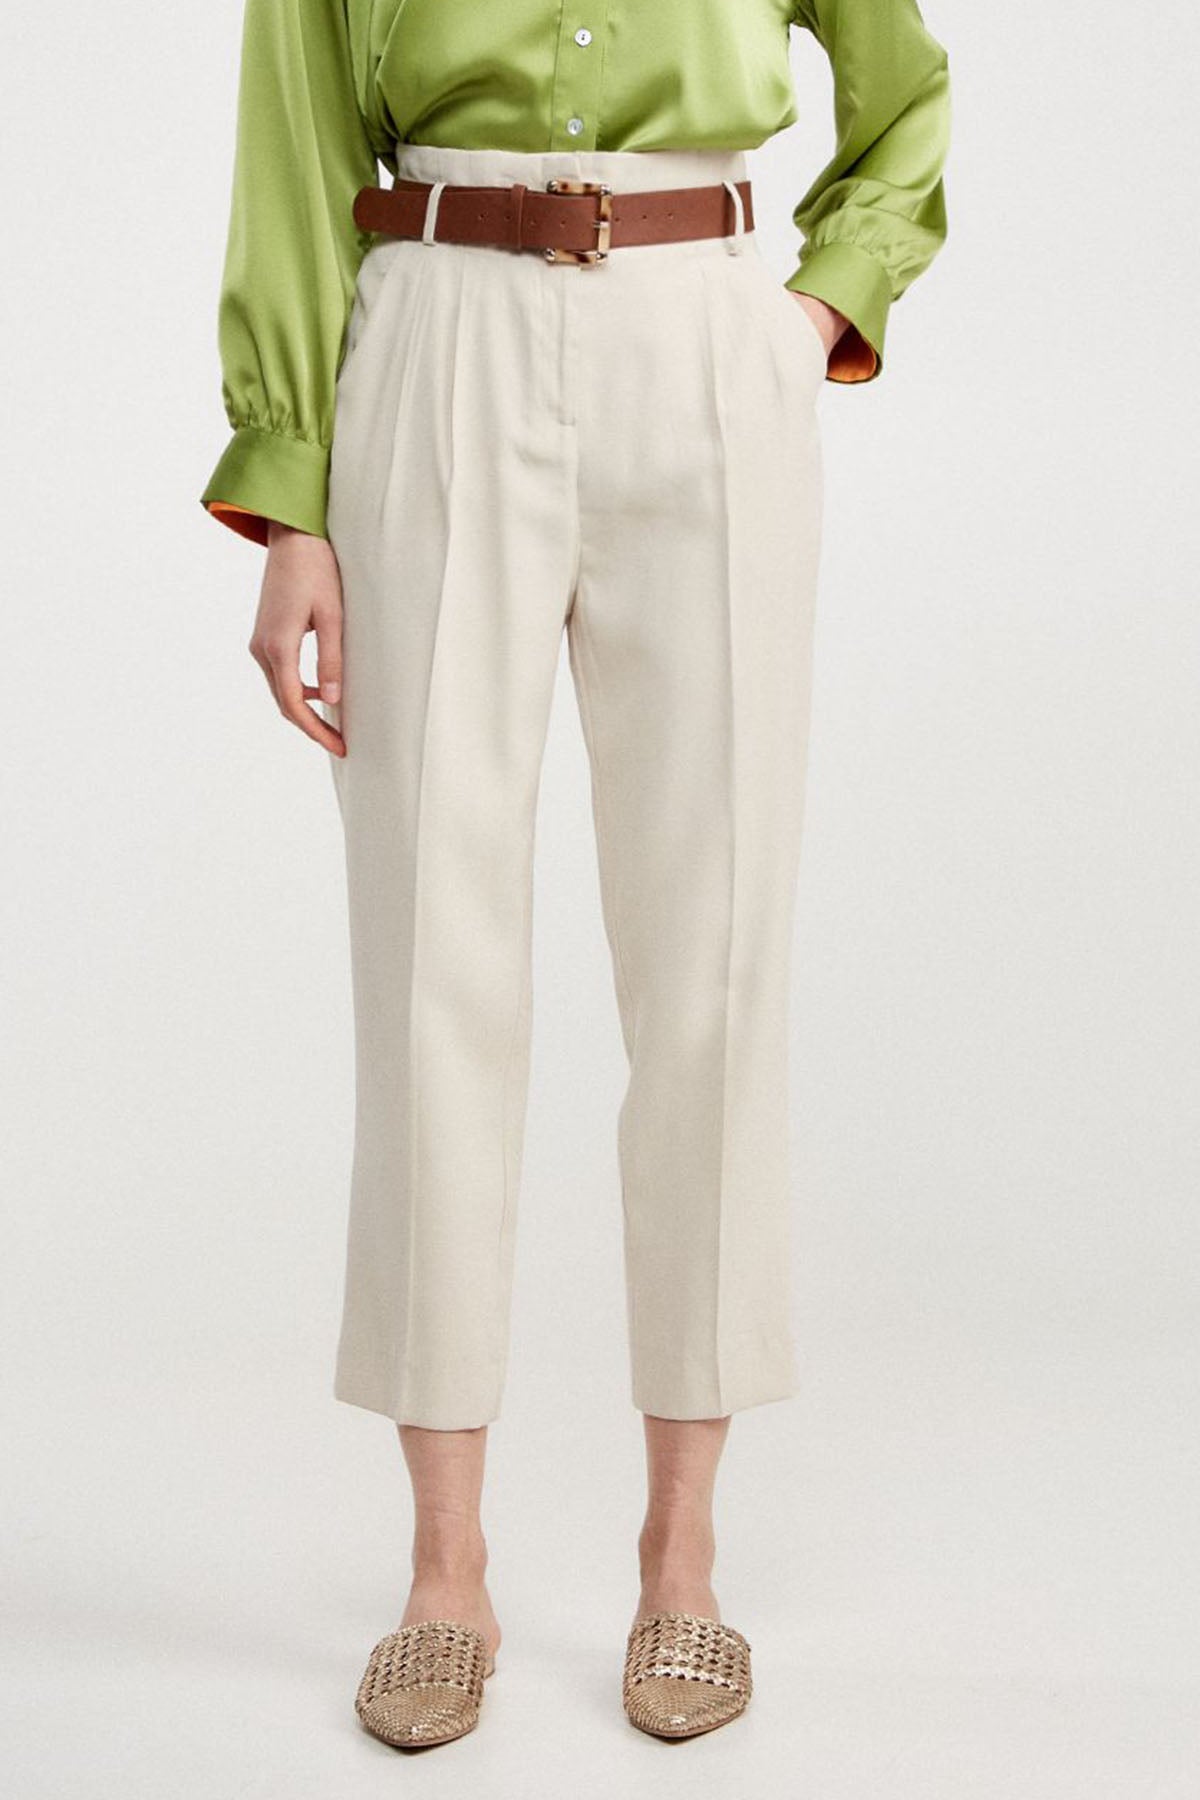 Bsb Pileli Yüksek Bel Paperbag Pantolon-Libas Trendy Fashion Store